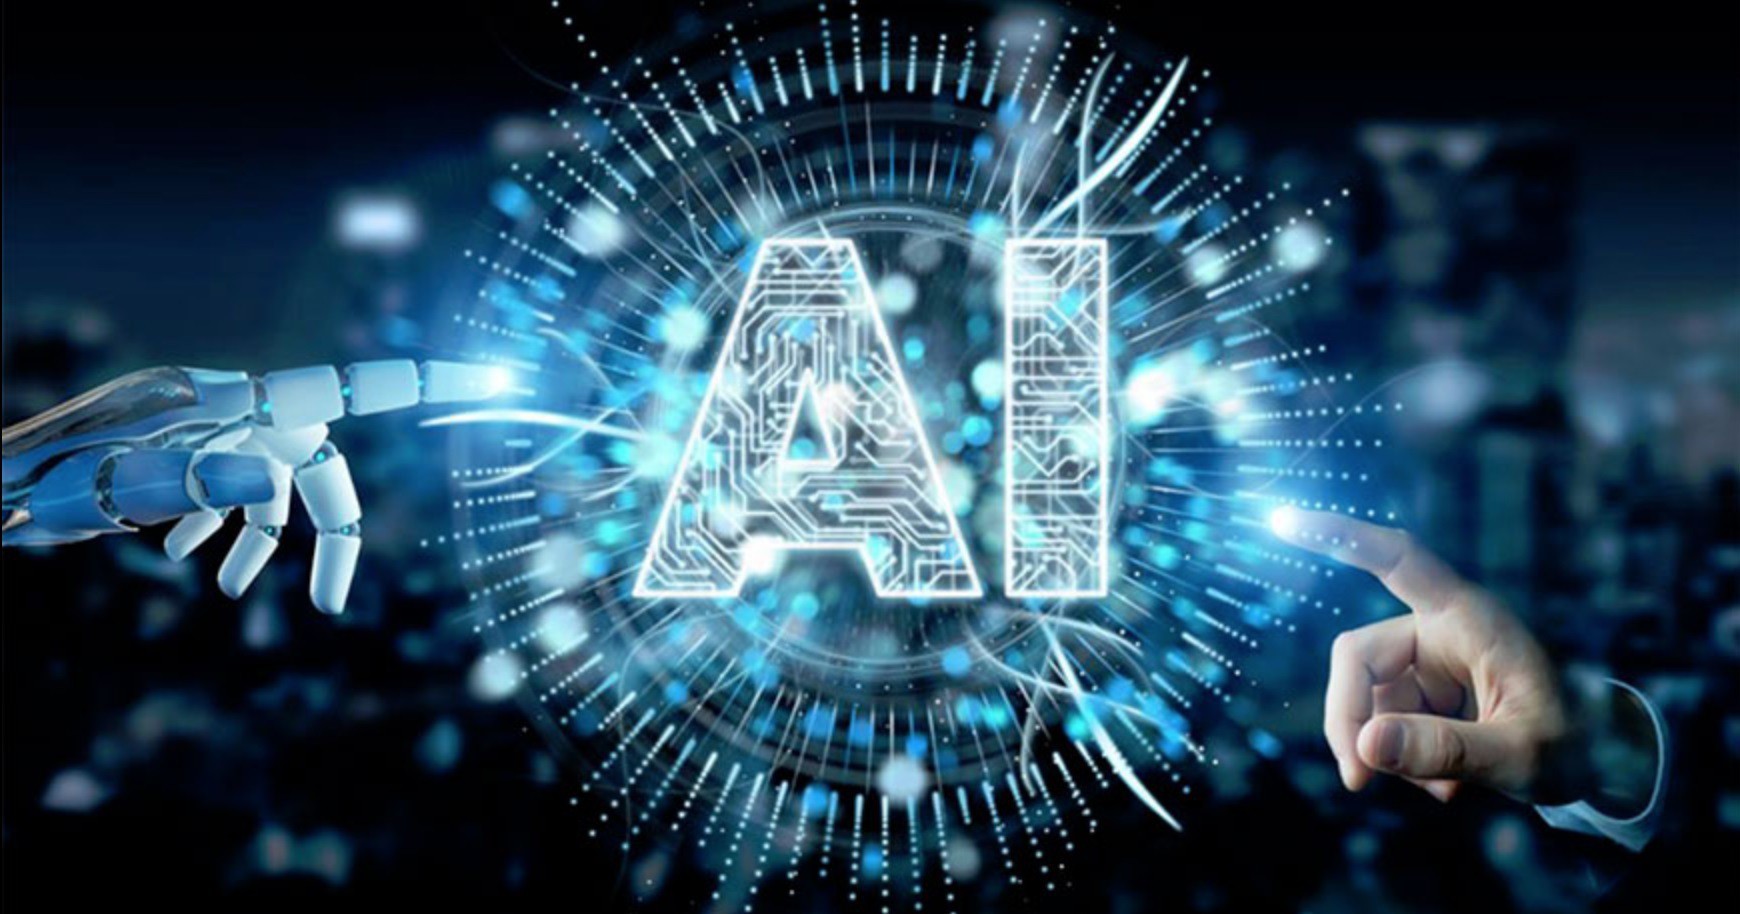 
AI (viết tắt của Artifical Intelligence) có nghĩa là trí tuệ nhân tạo.
